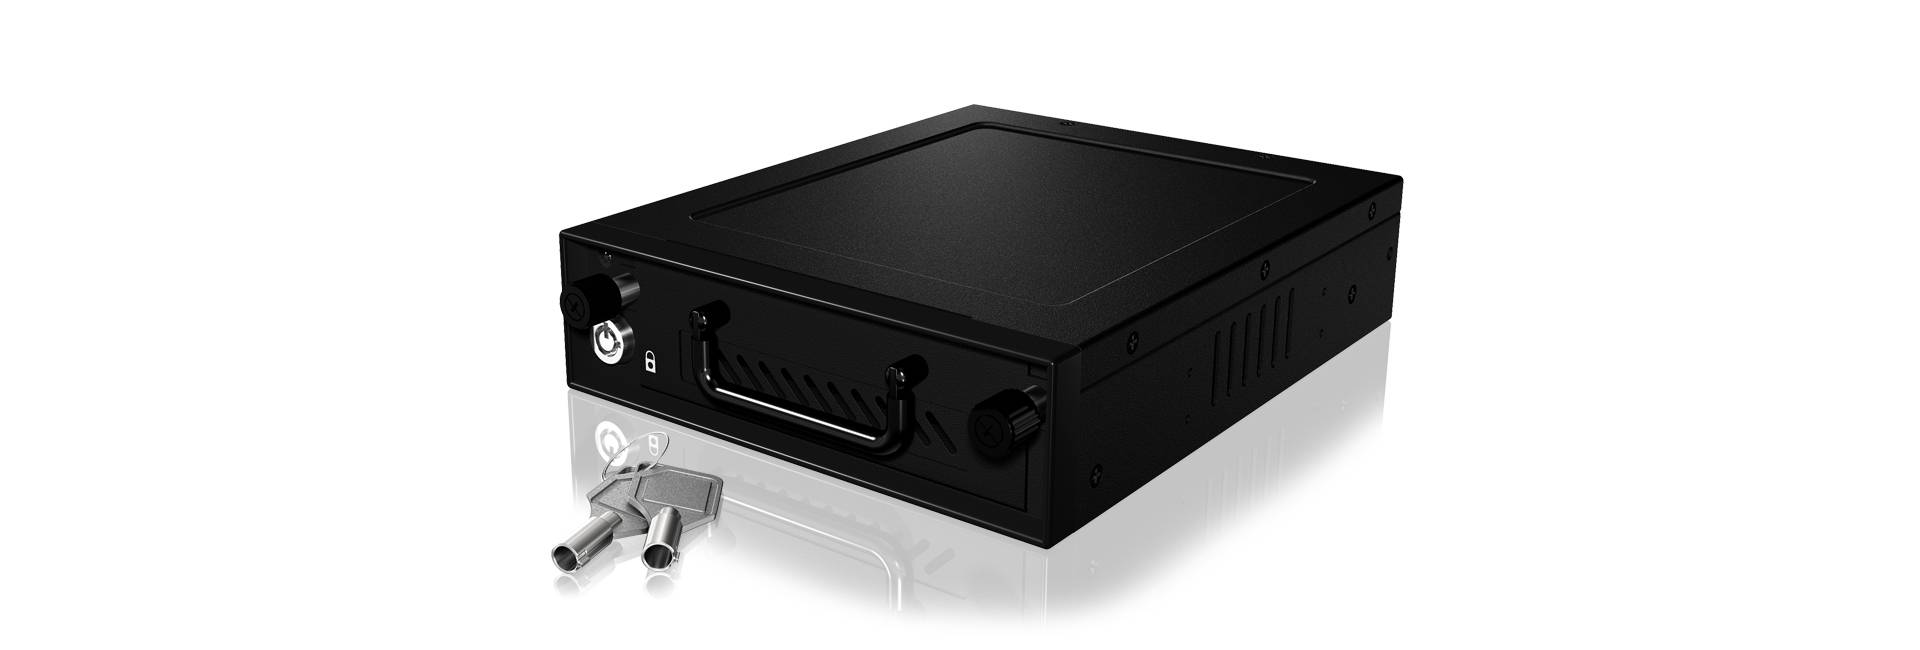 RAIDSONIC ICY BOX IB-148SSK-B HDD Wechselrahmen fuer 6,4cm 2.5Zoll und 8,9cm 3.5Zoll SATA HDD und SS